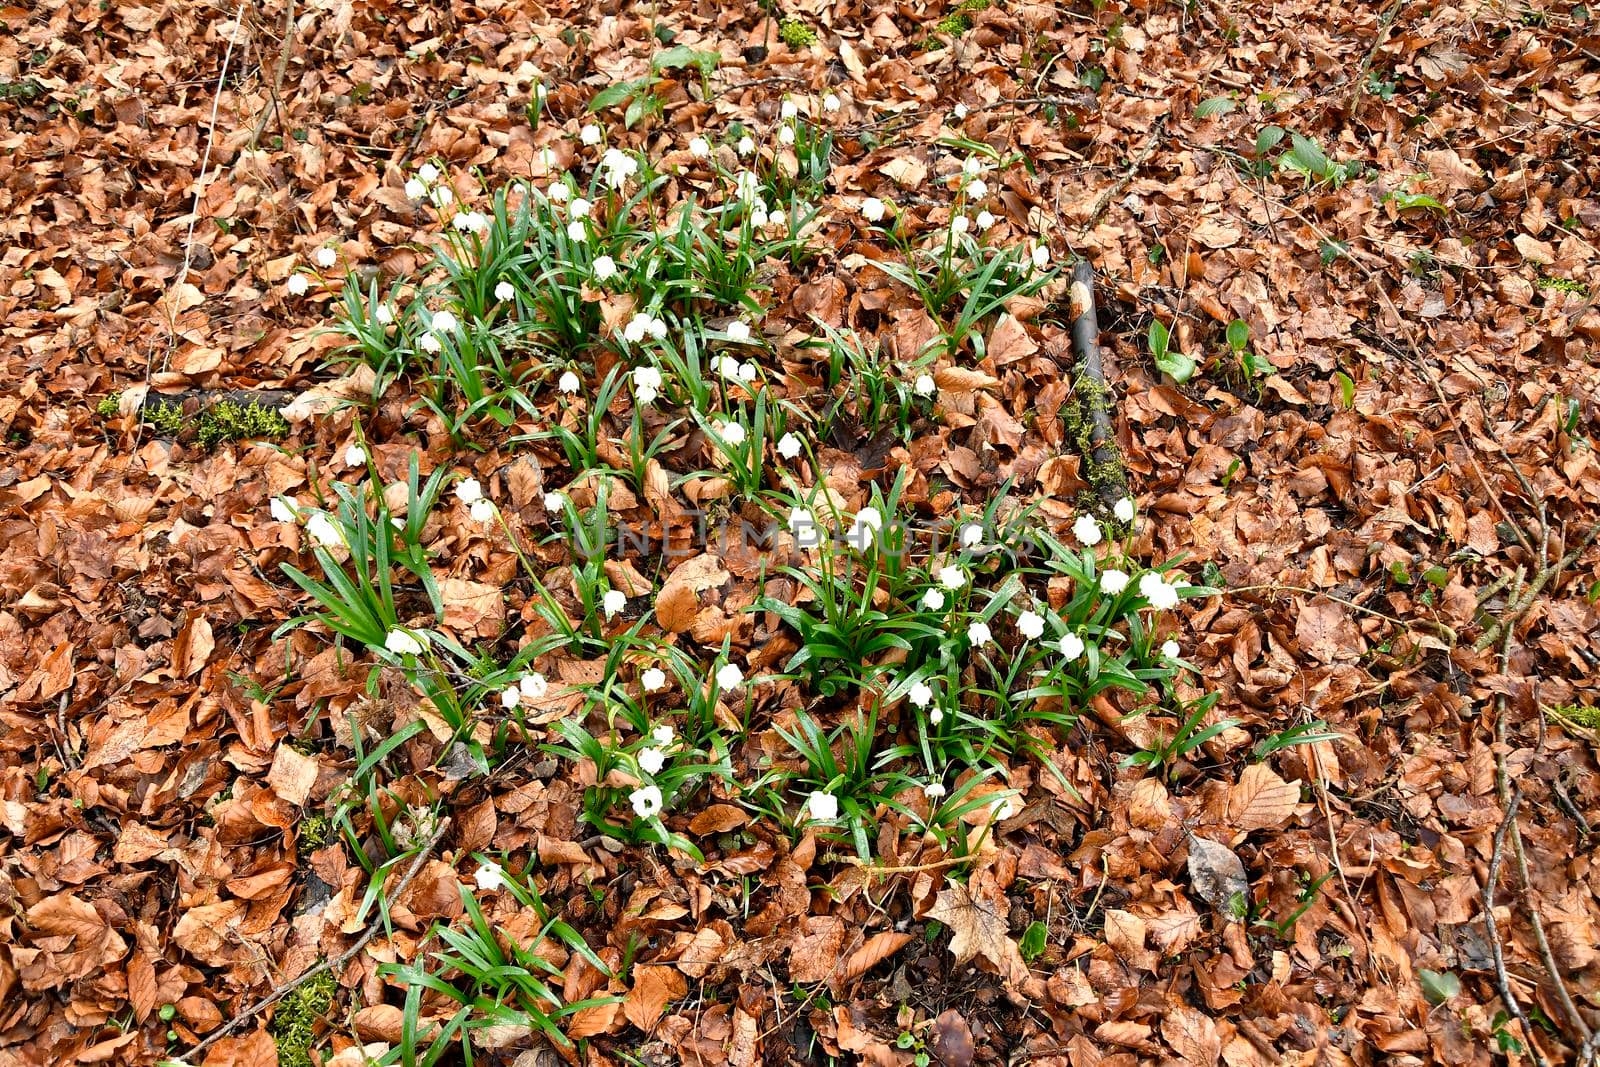 Snowflake, early spring flower in the Autal, Bad Ueberkingen, Germany by Jochen